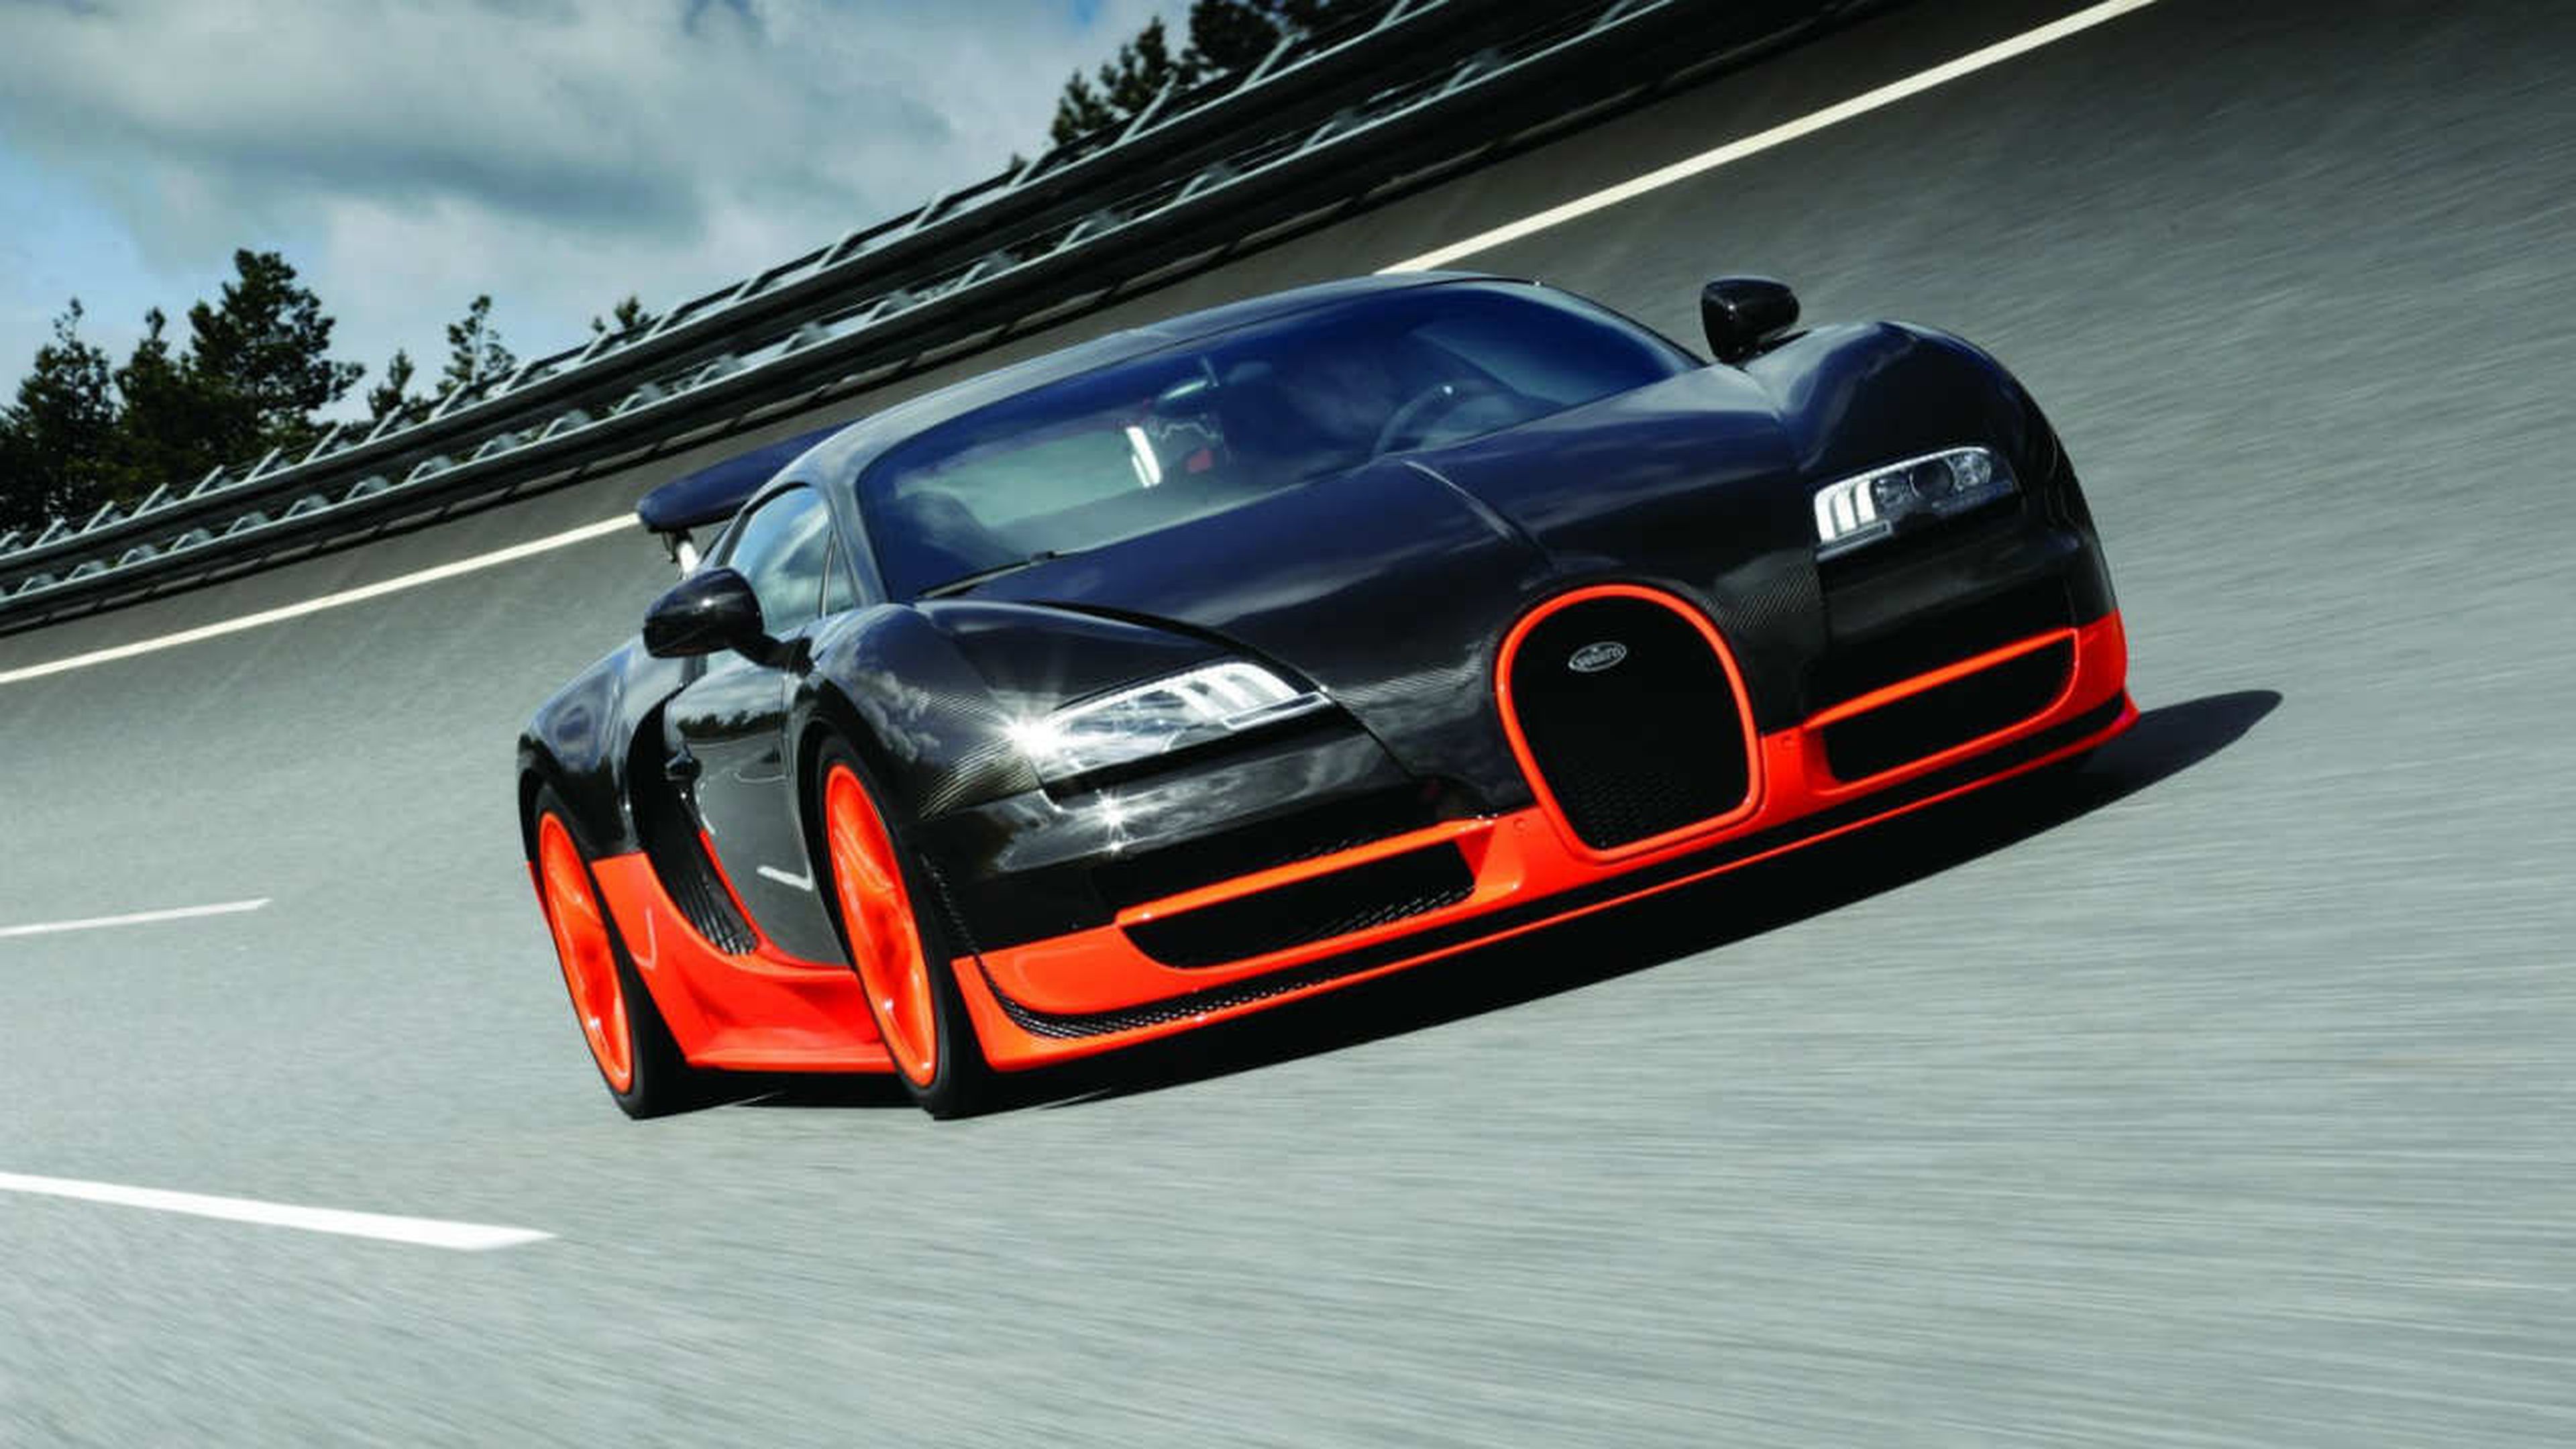 Precio del Bugatti Veyron Super Sport